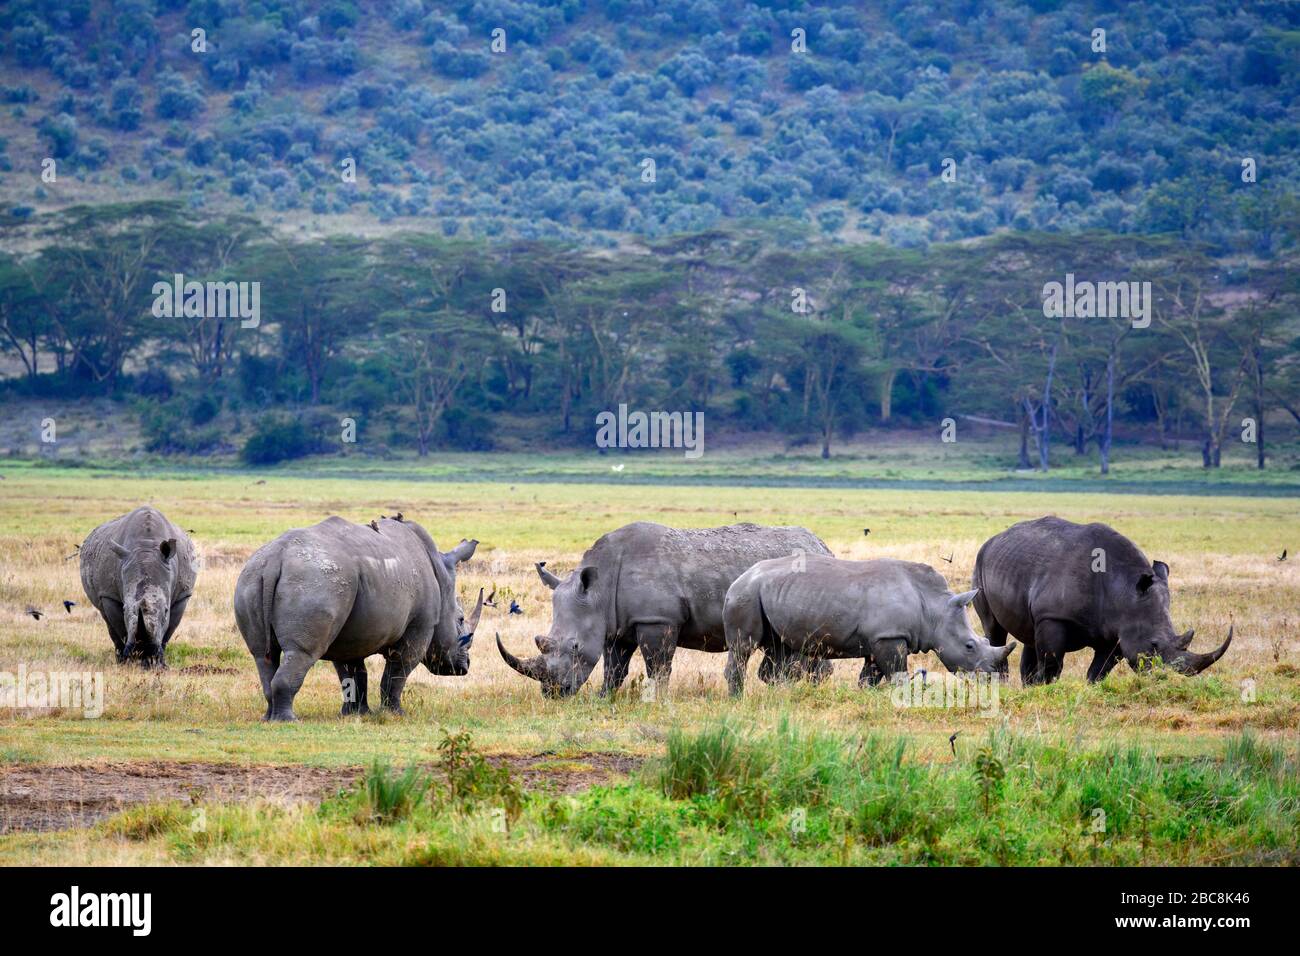 Rhinocéros blancs (Ceratotherium simum). Groupe de rhinocéros blancs, Parc national du lac Nakuru, Kenya, Afrique Banque D'Images